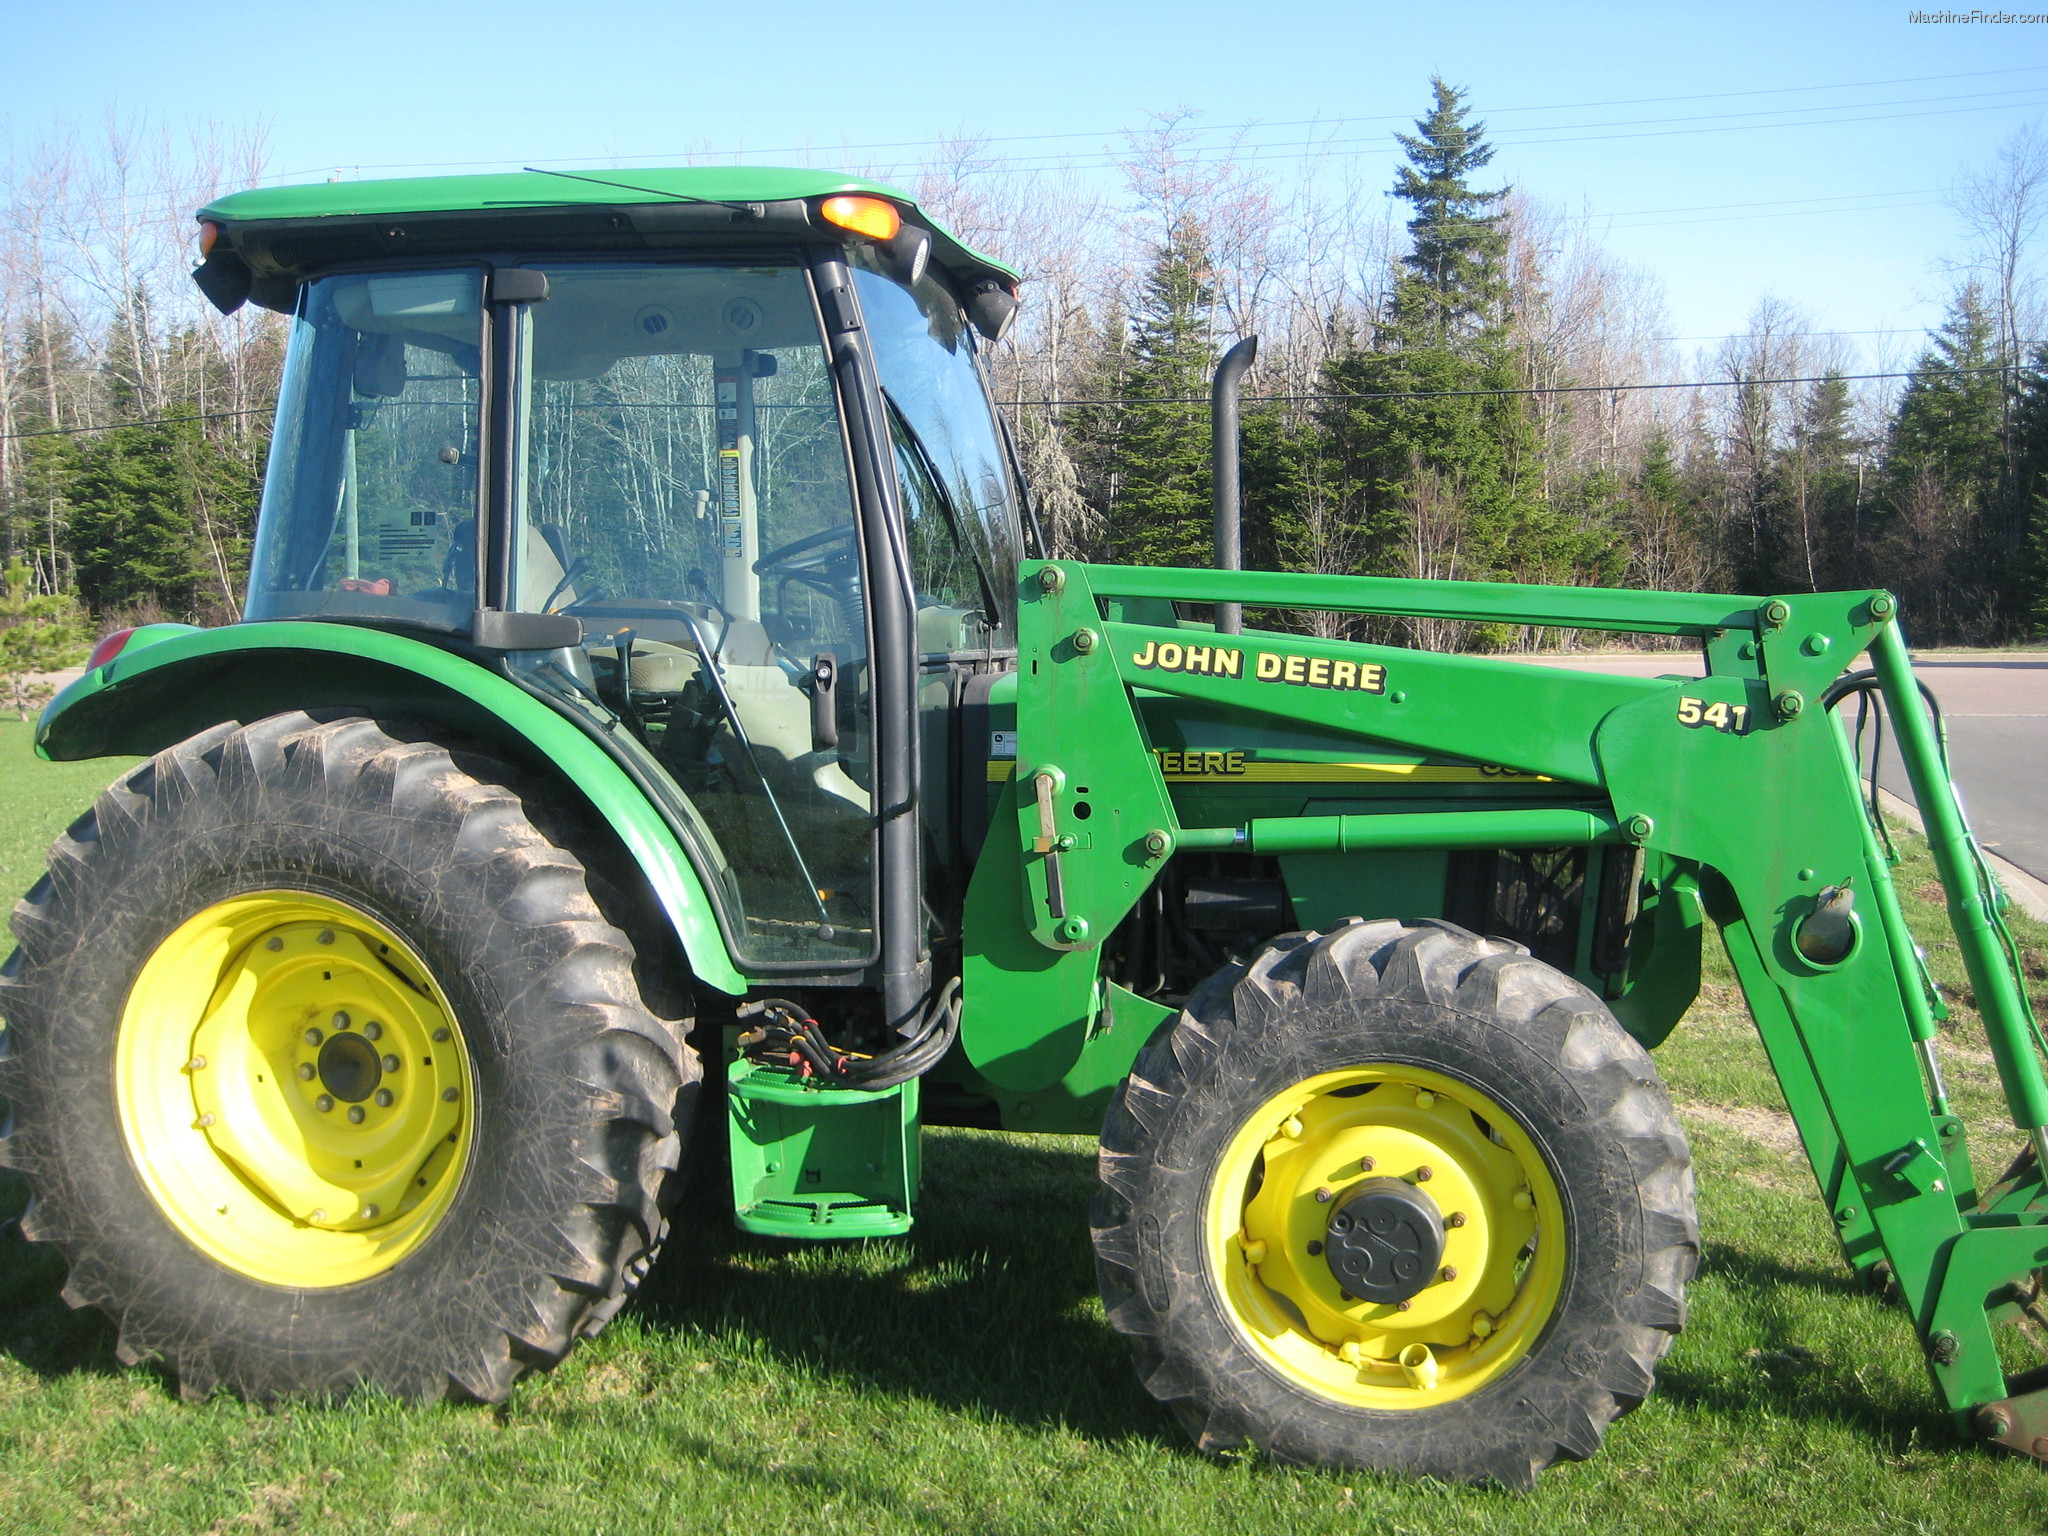 2004 John Deere 5520 Tractors - Utility (40-100hp) - John Deere ...